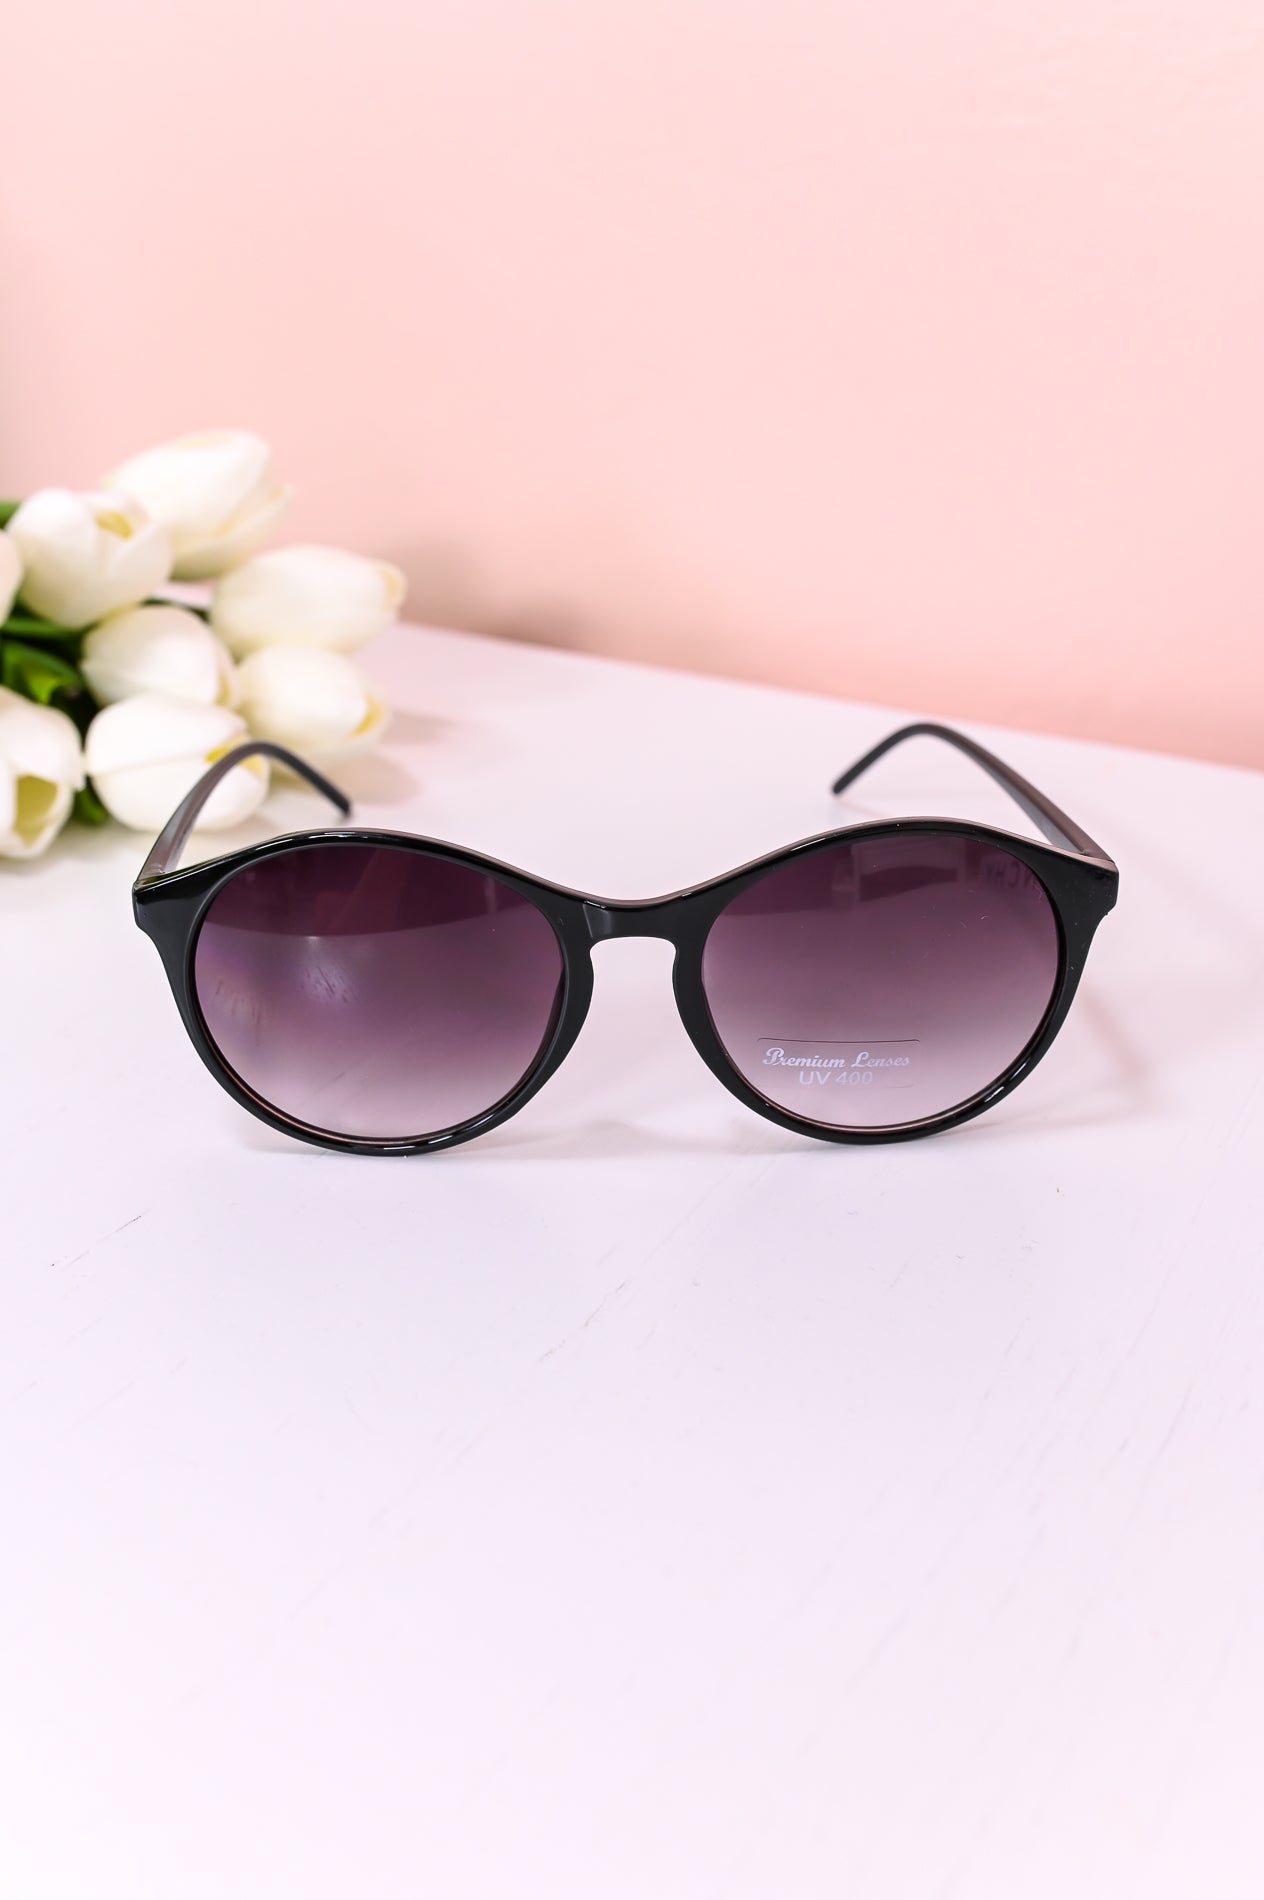 Black Frame/Black Ombre Lens Sunglasses - SGL319BK